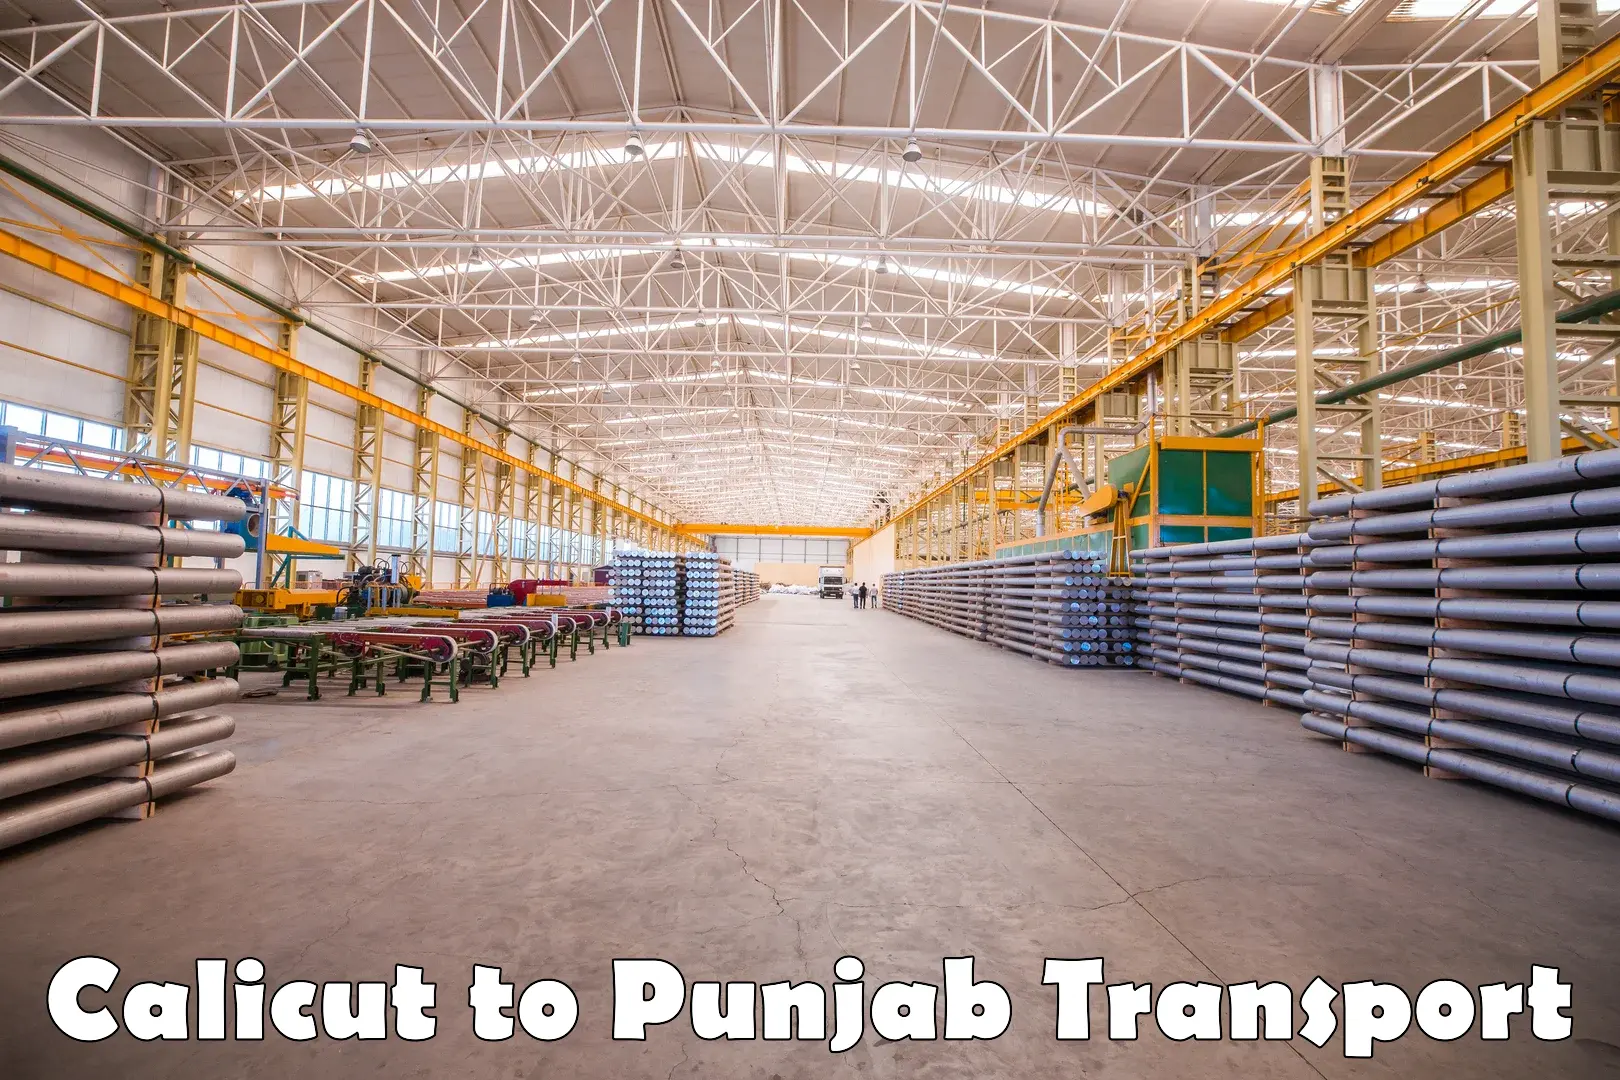 Furniture transport service in Calicut to Punjab